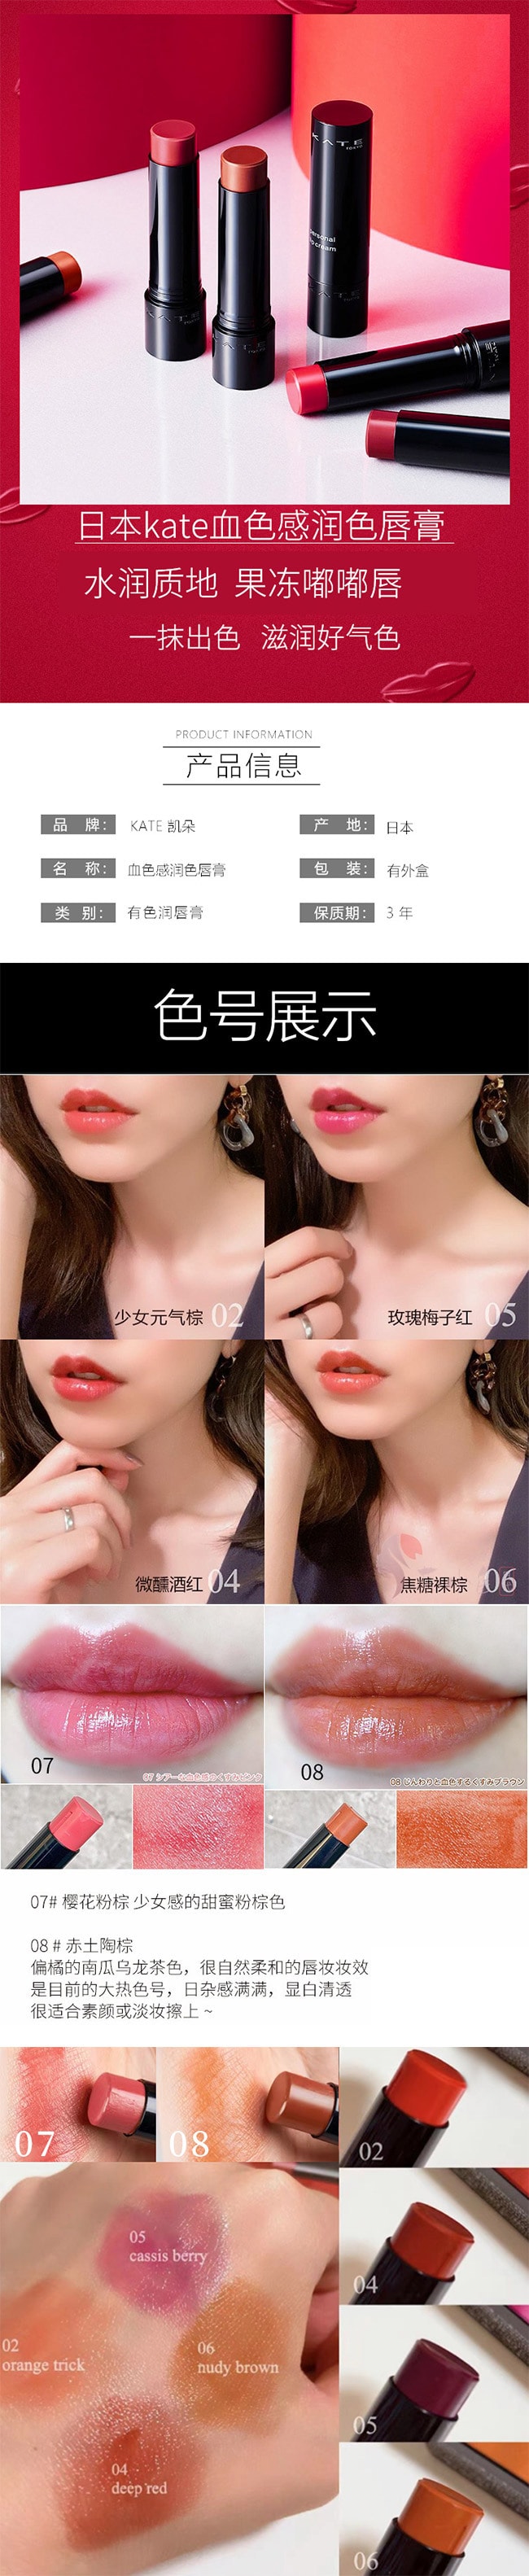 【日本直效郵件】KATE 凱朵 CC有色潤唇膏 3.7g #02